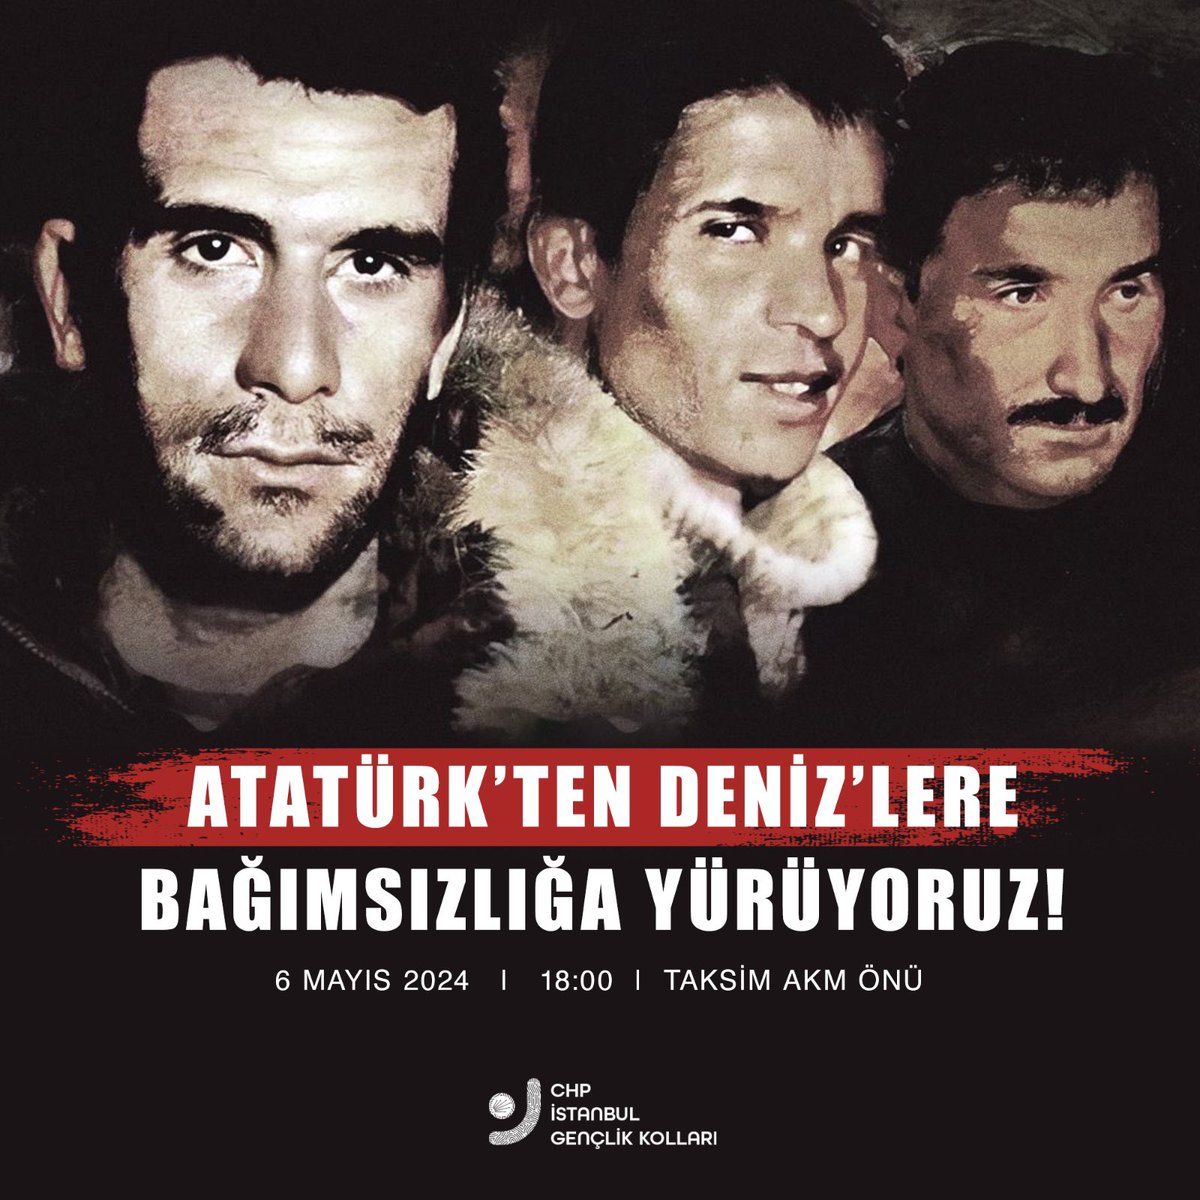 Atatürk'ten Deniz'lere; Taksim'den Dolmabahçe'ye BAĞIMSIZLIĞA yürüyoruz! 6 Mayıs 2024 Saat 18.00 Taksim AKM Önü